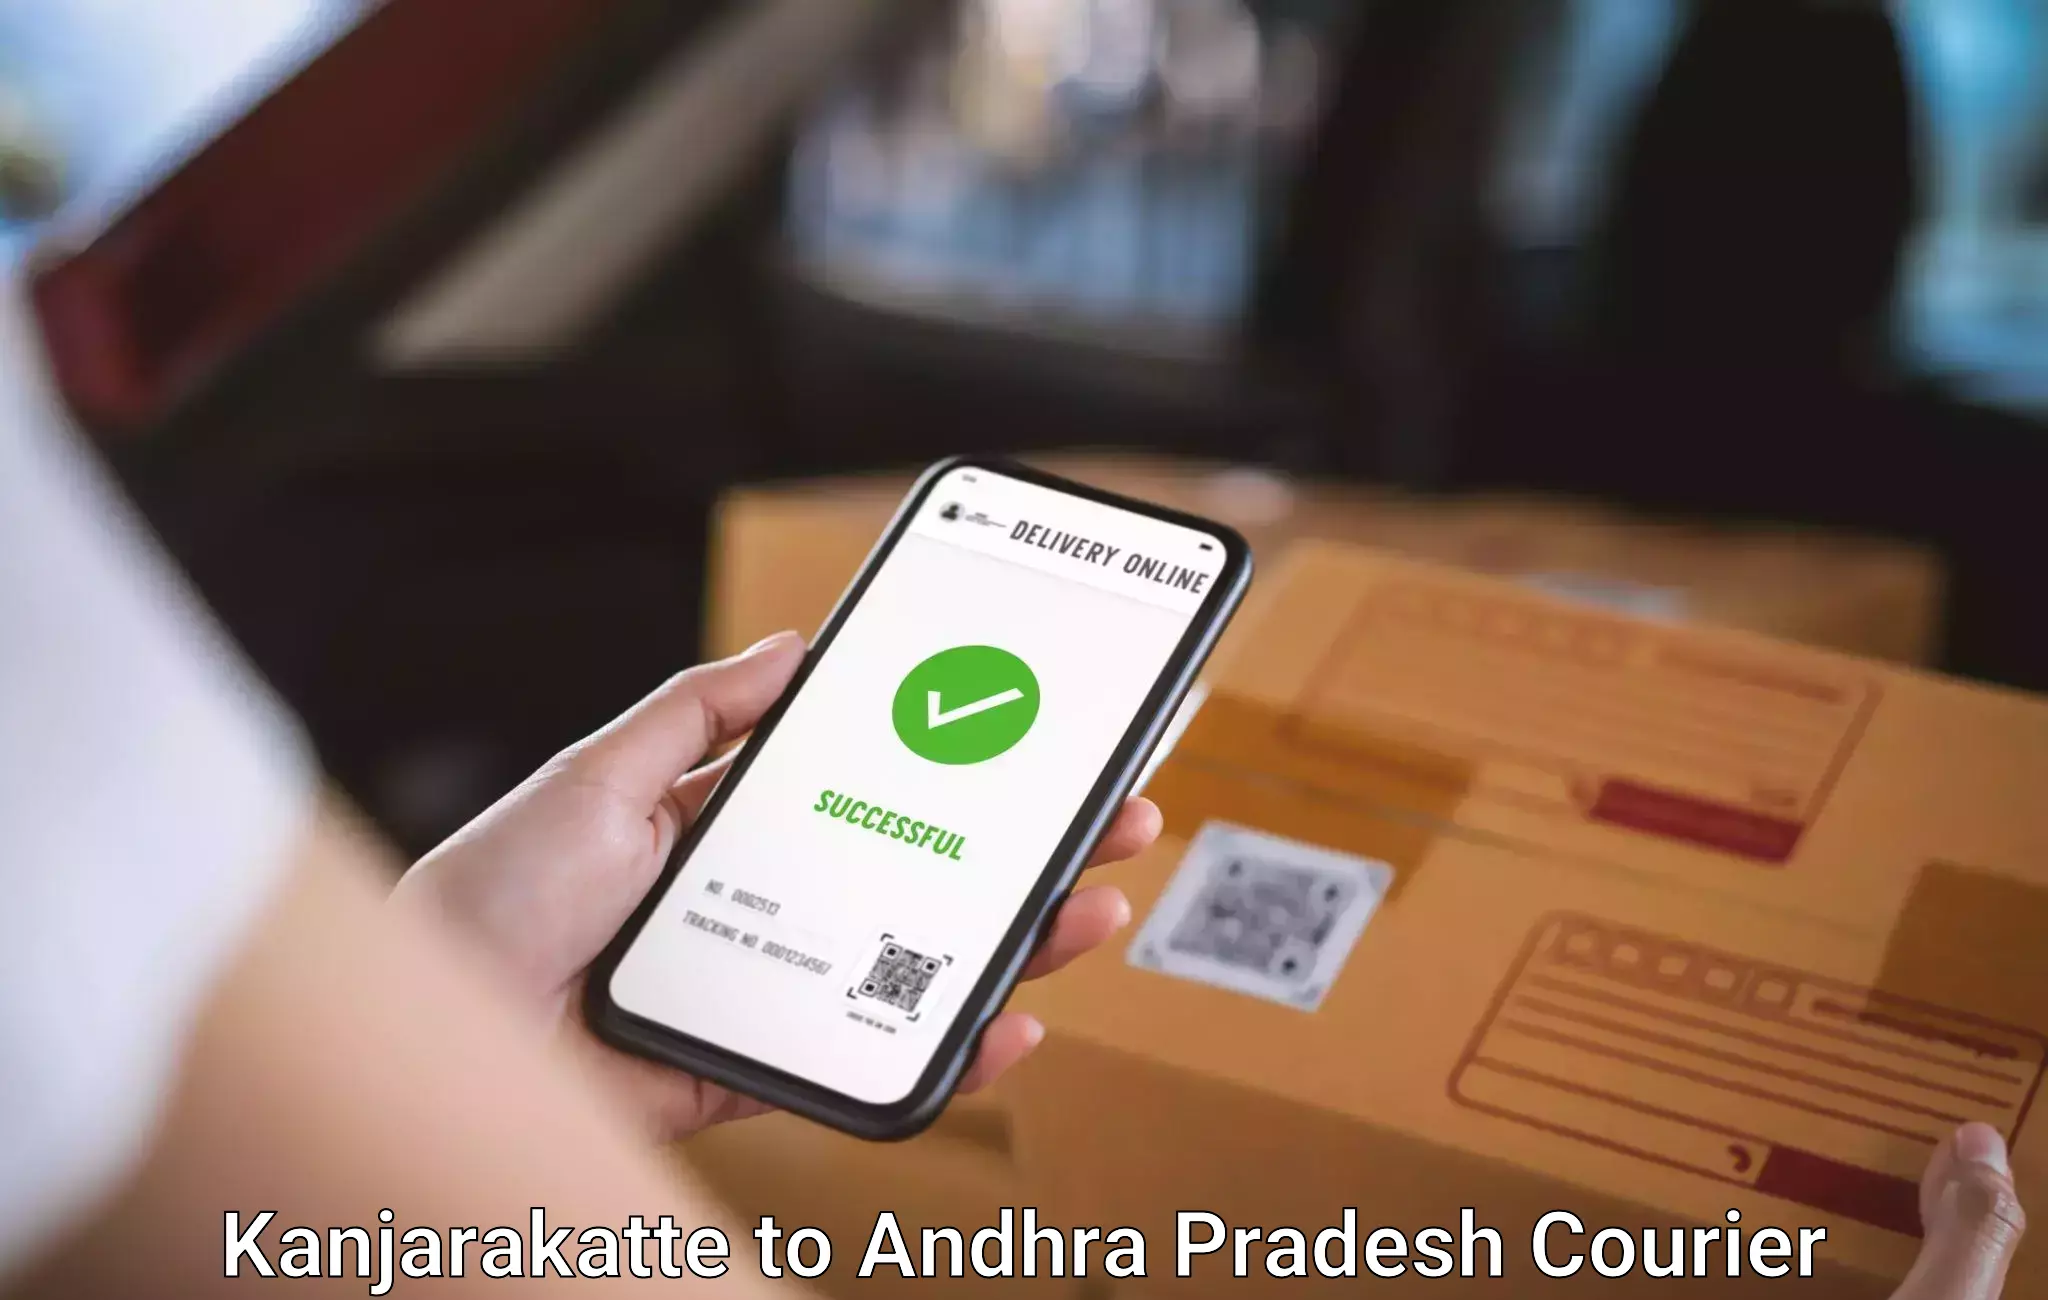 Baggage courier service Kanjarakatte to Tirupati